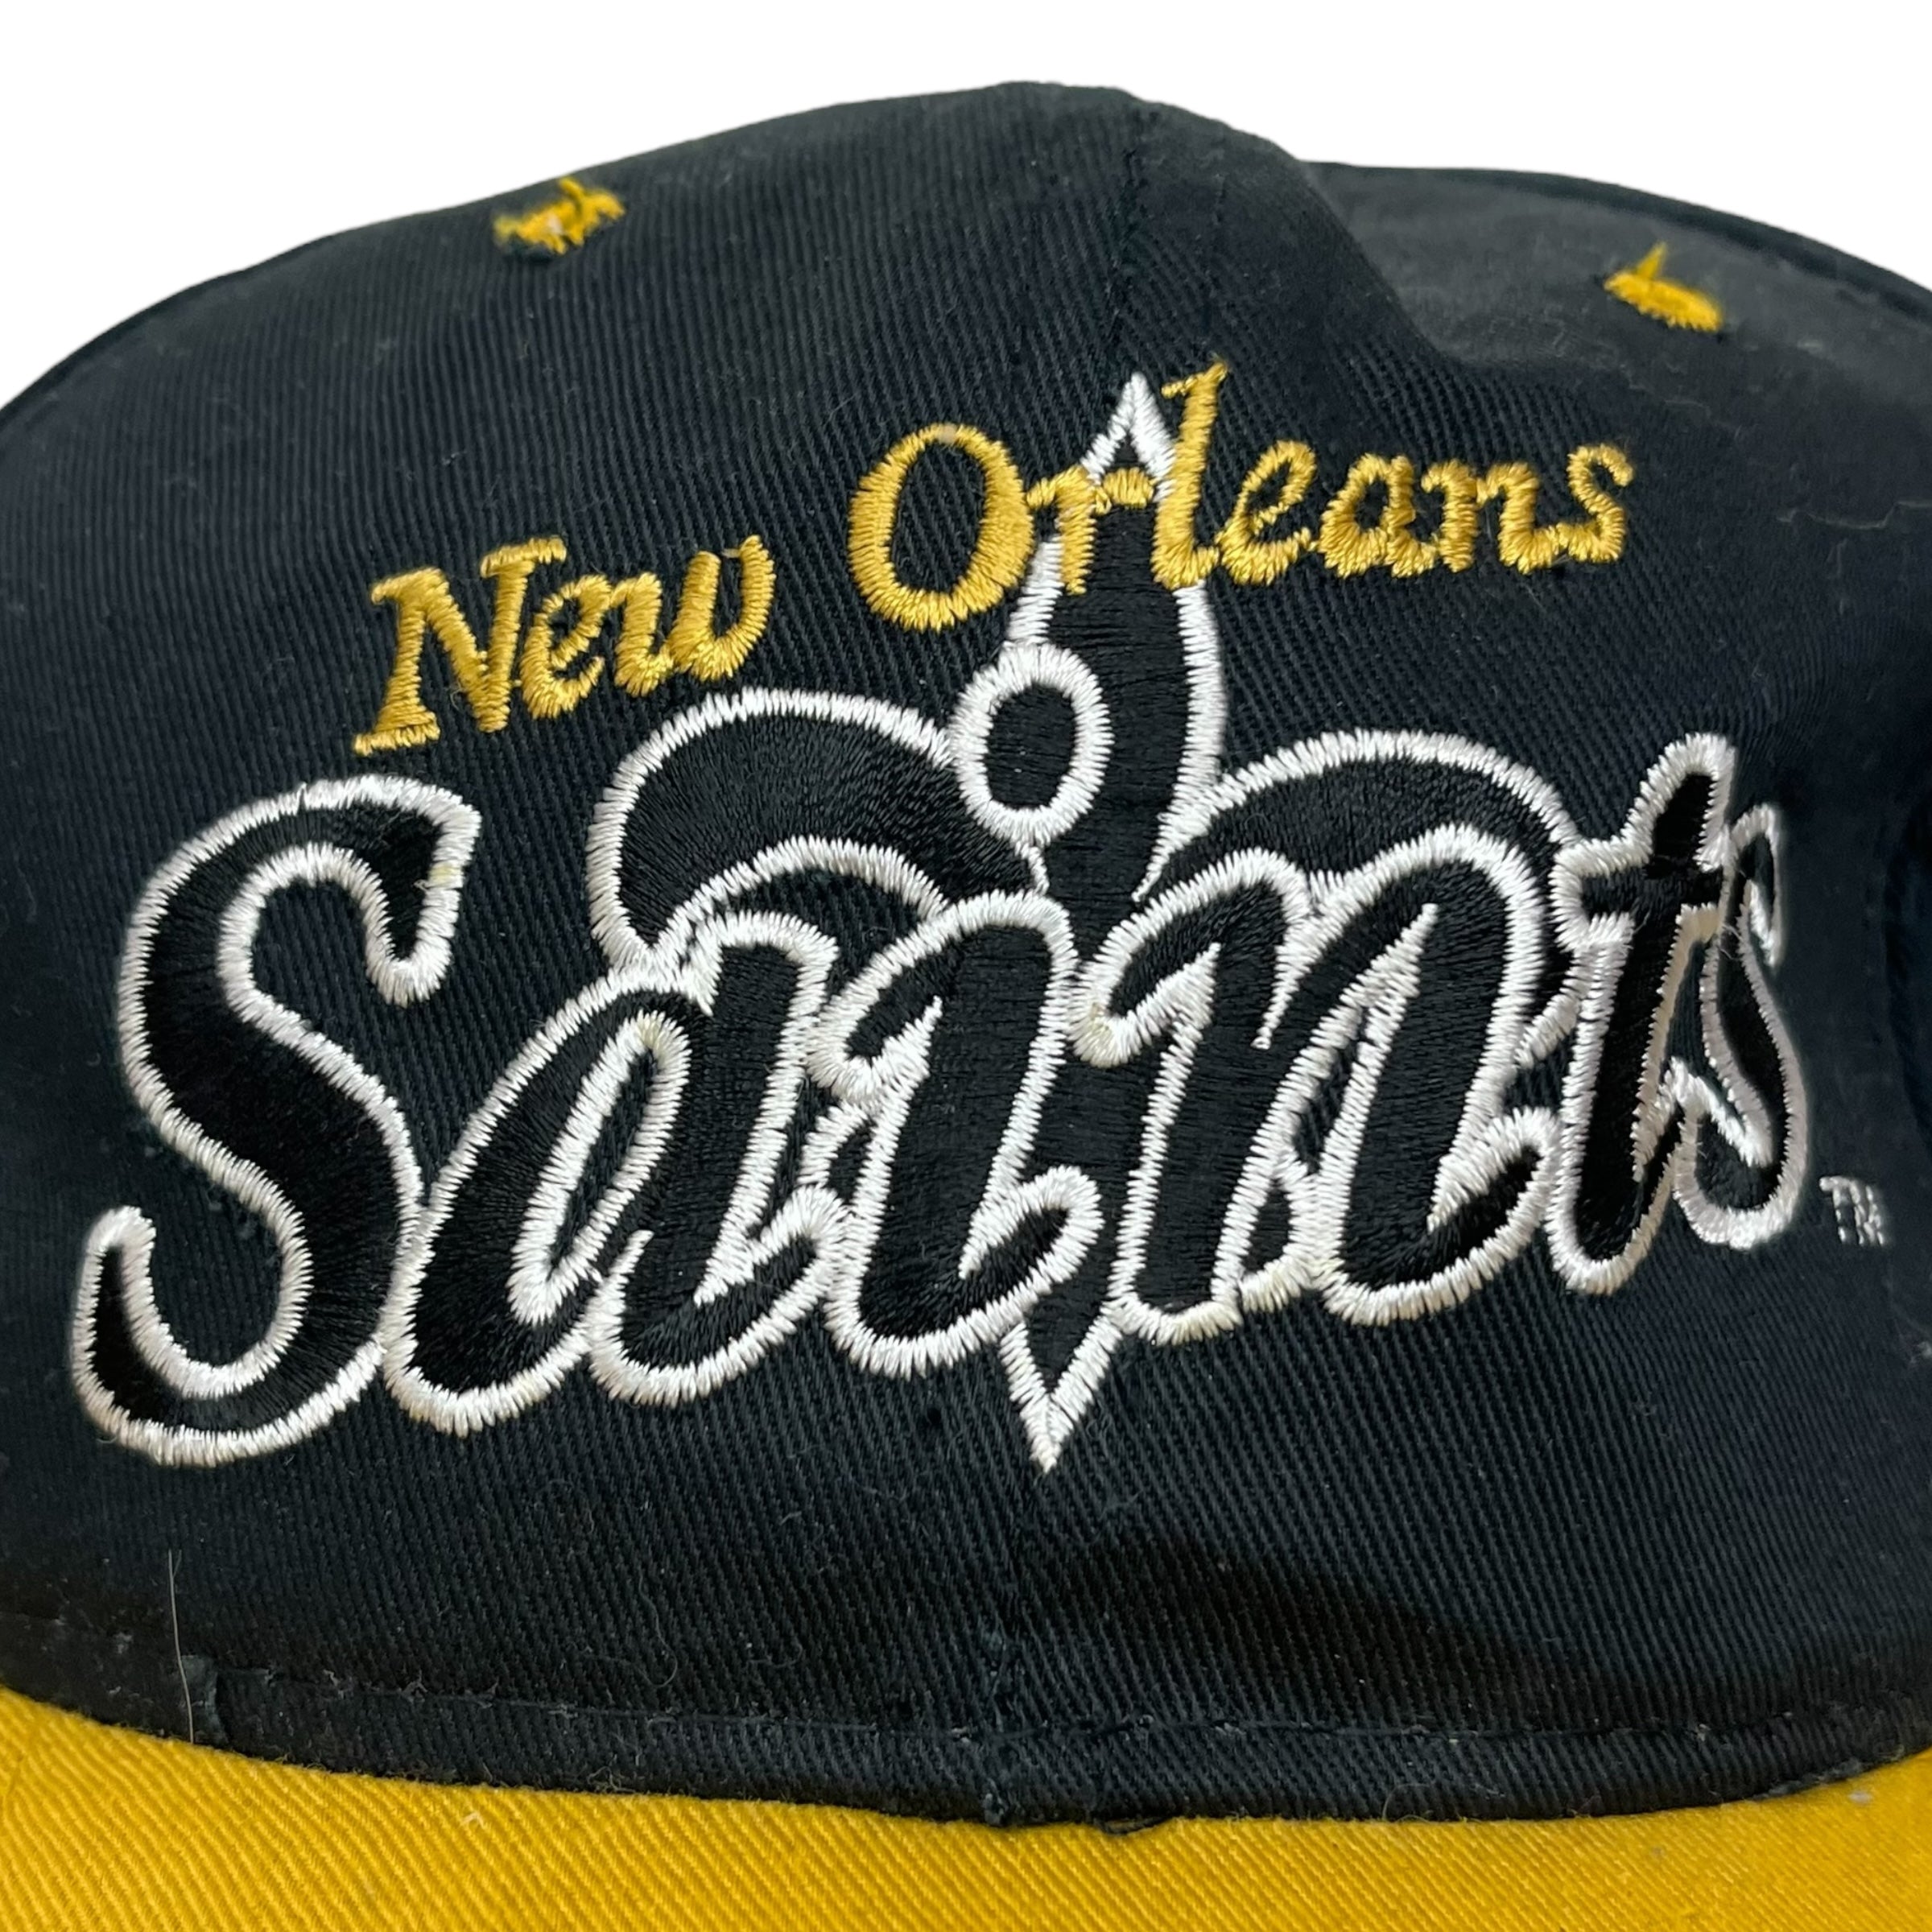 Vintage New Orleans Saints Hat - Black/Yellow Cap